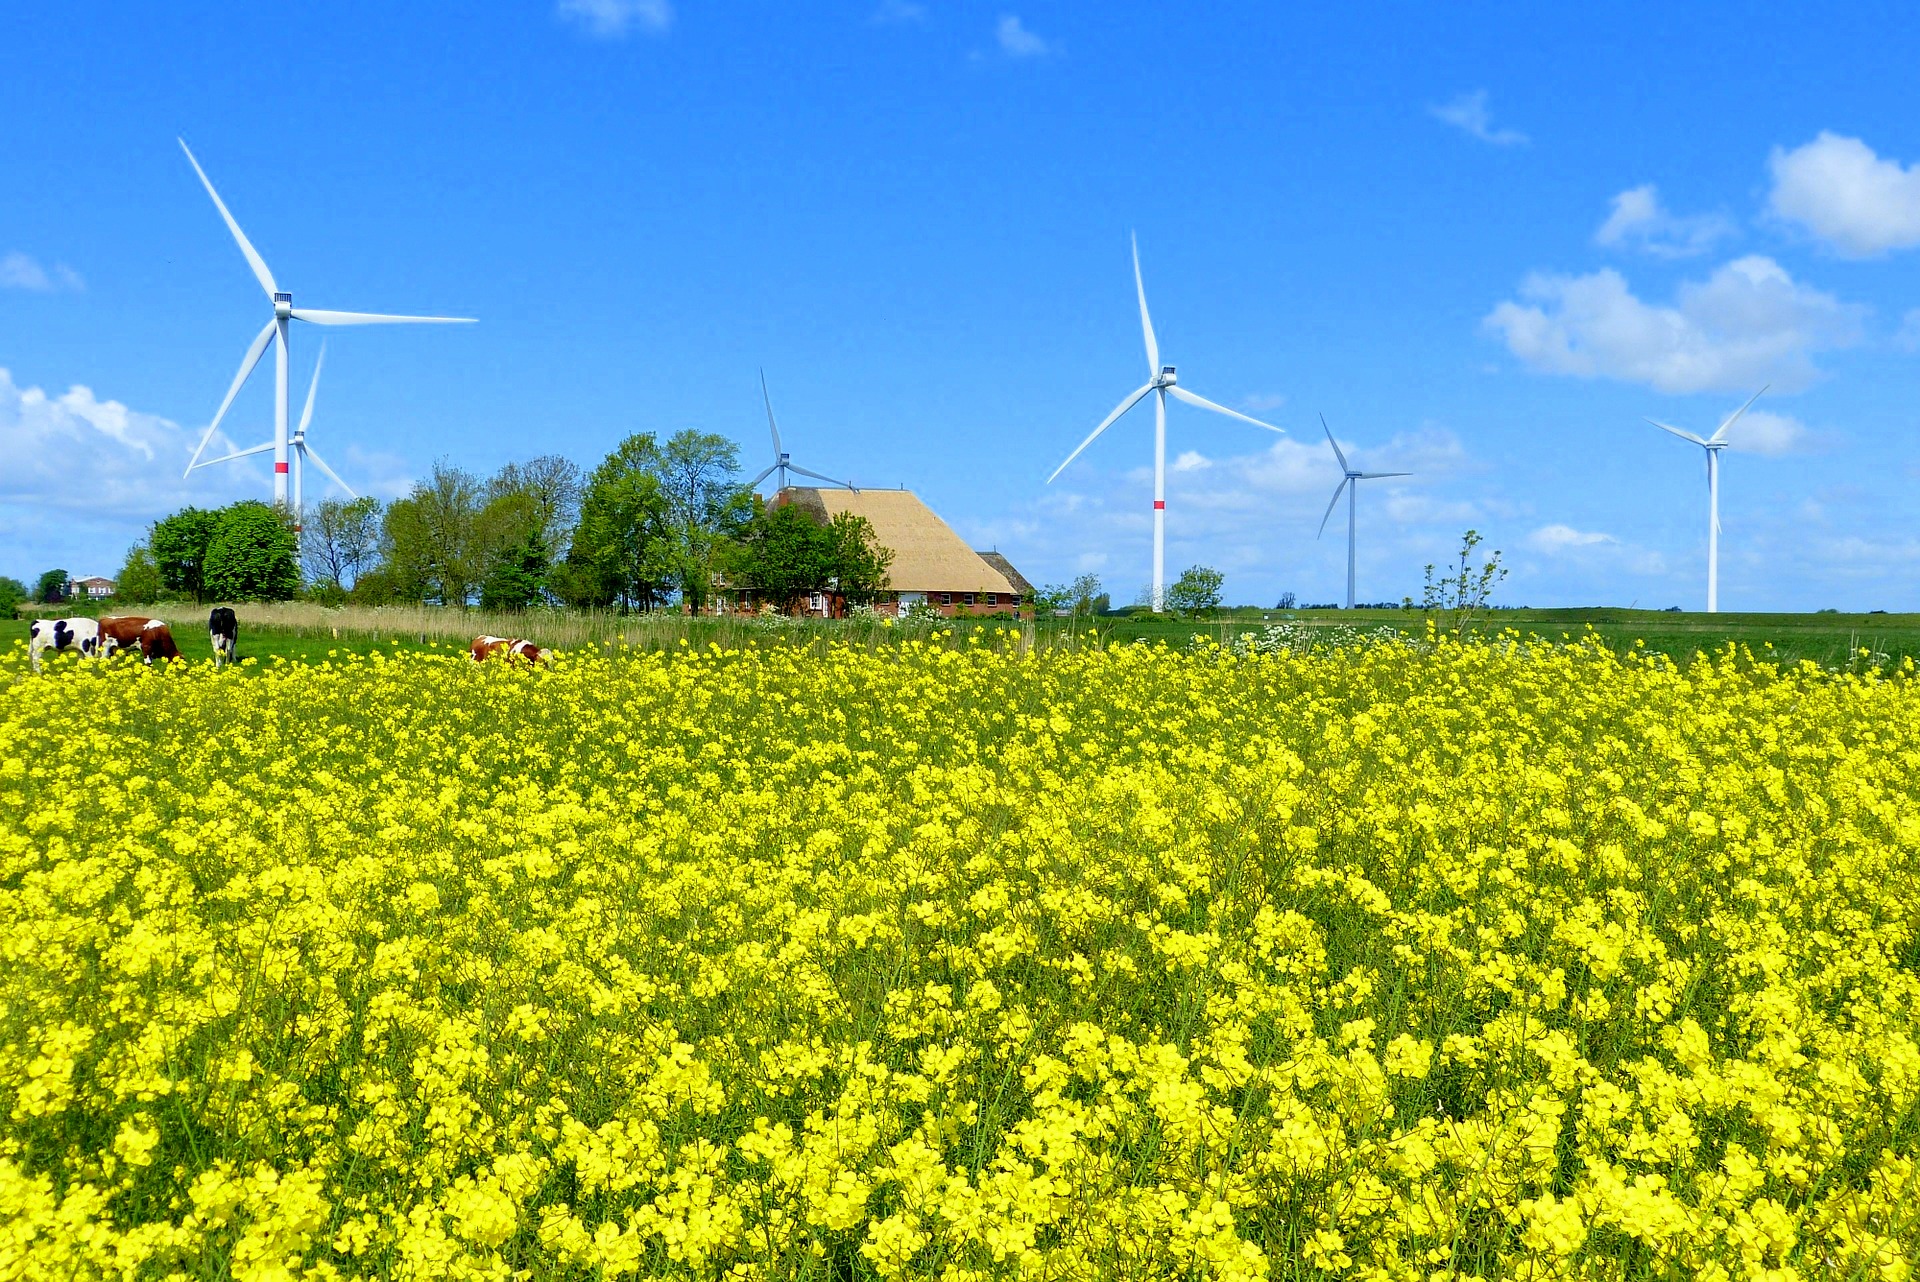 Rapsfeld mit Windkraftanlagen